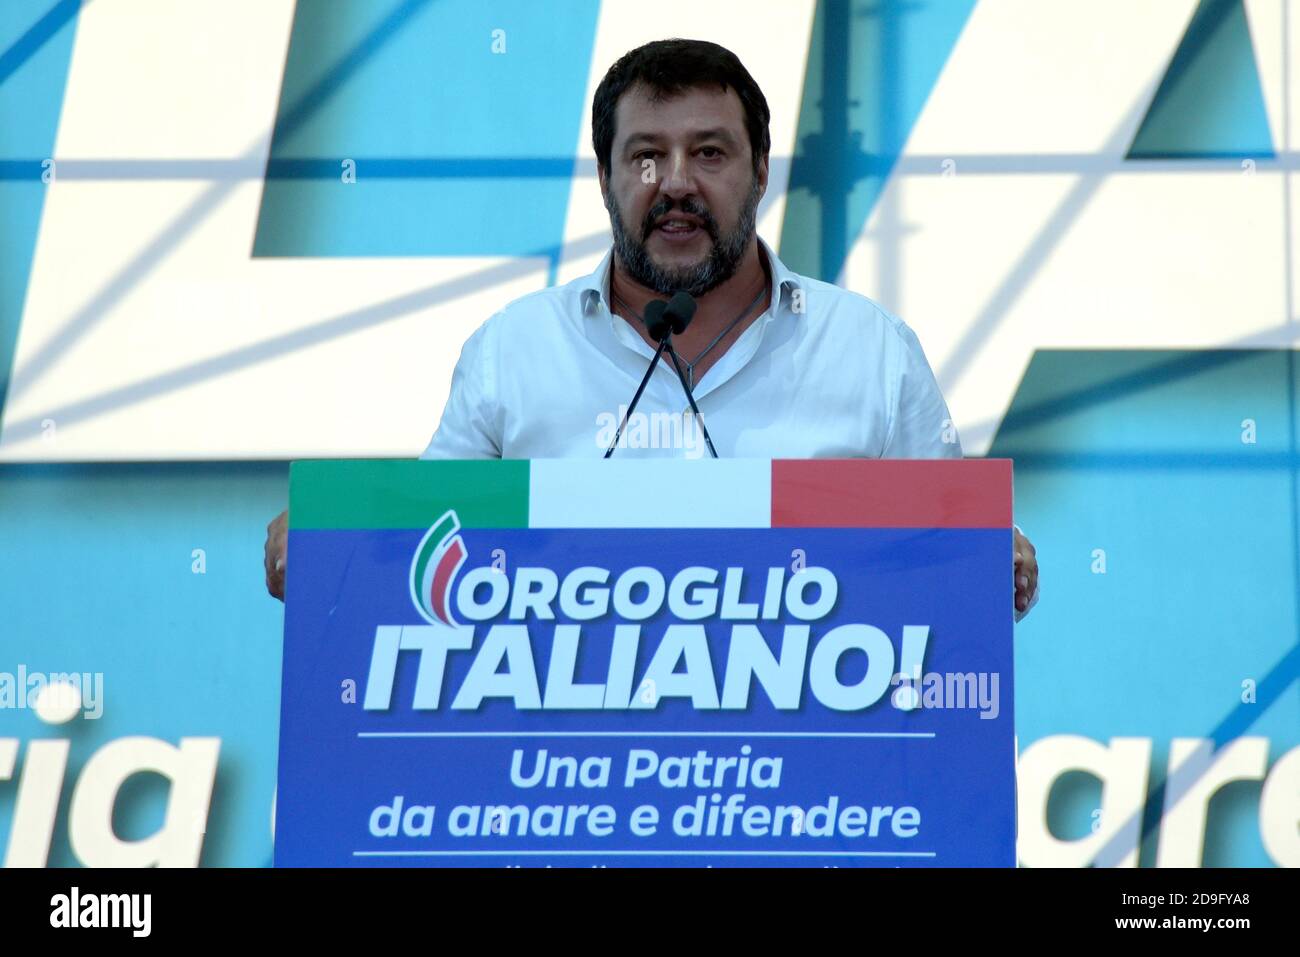 Matteo Salvini, chef de la partie Lega, s'exprimant sur scène lors de l'événement « fierté italienne » sur la Piazza San Giovanni, qui réunit les partis de droite italiens Lega, Fratelli d'Italia et Forza Italia. Banque D'Images